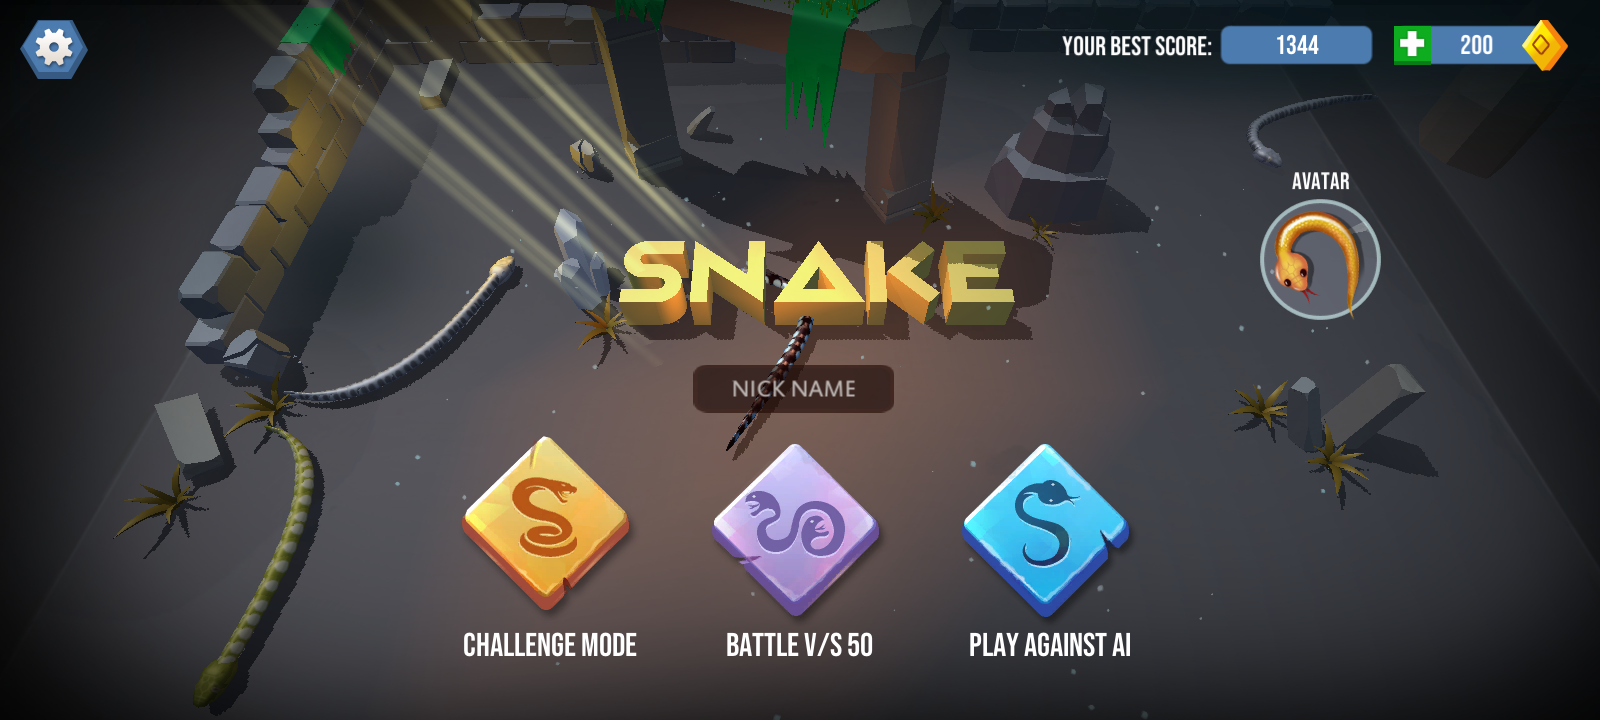 Screenshot 1 of Snake 2022 សមរភូមិពស់តាមអ៊ីនធឺណិត 31.0